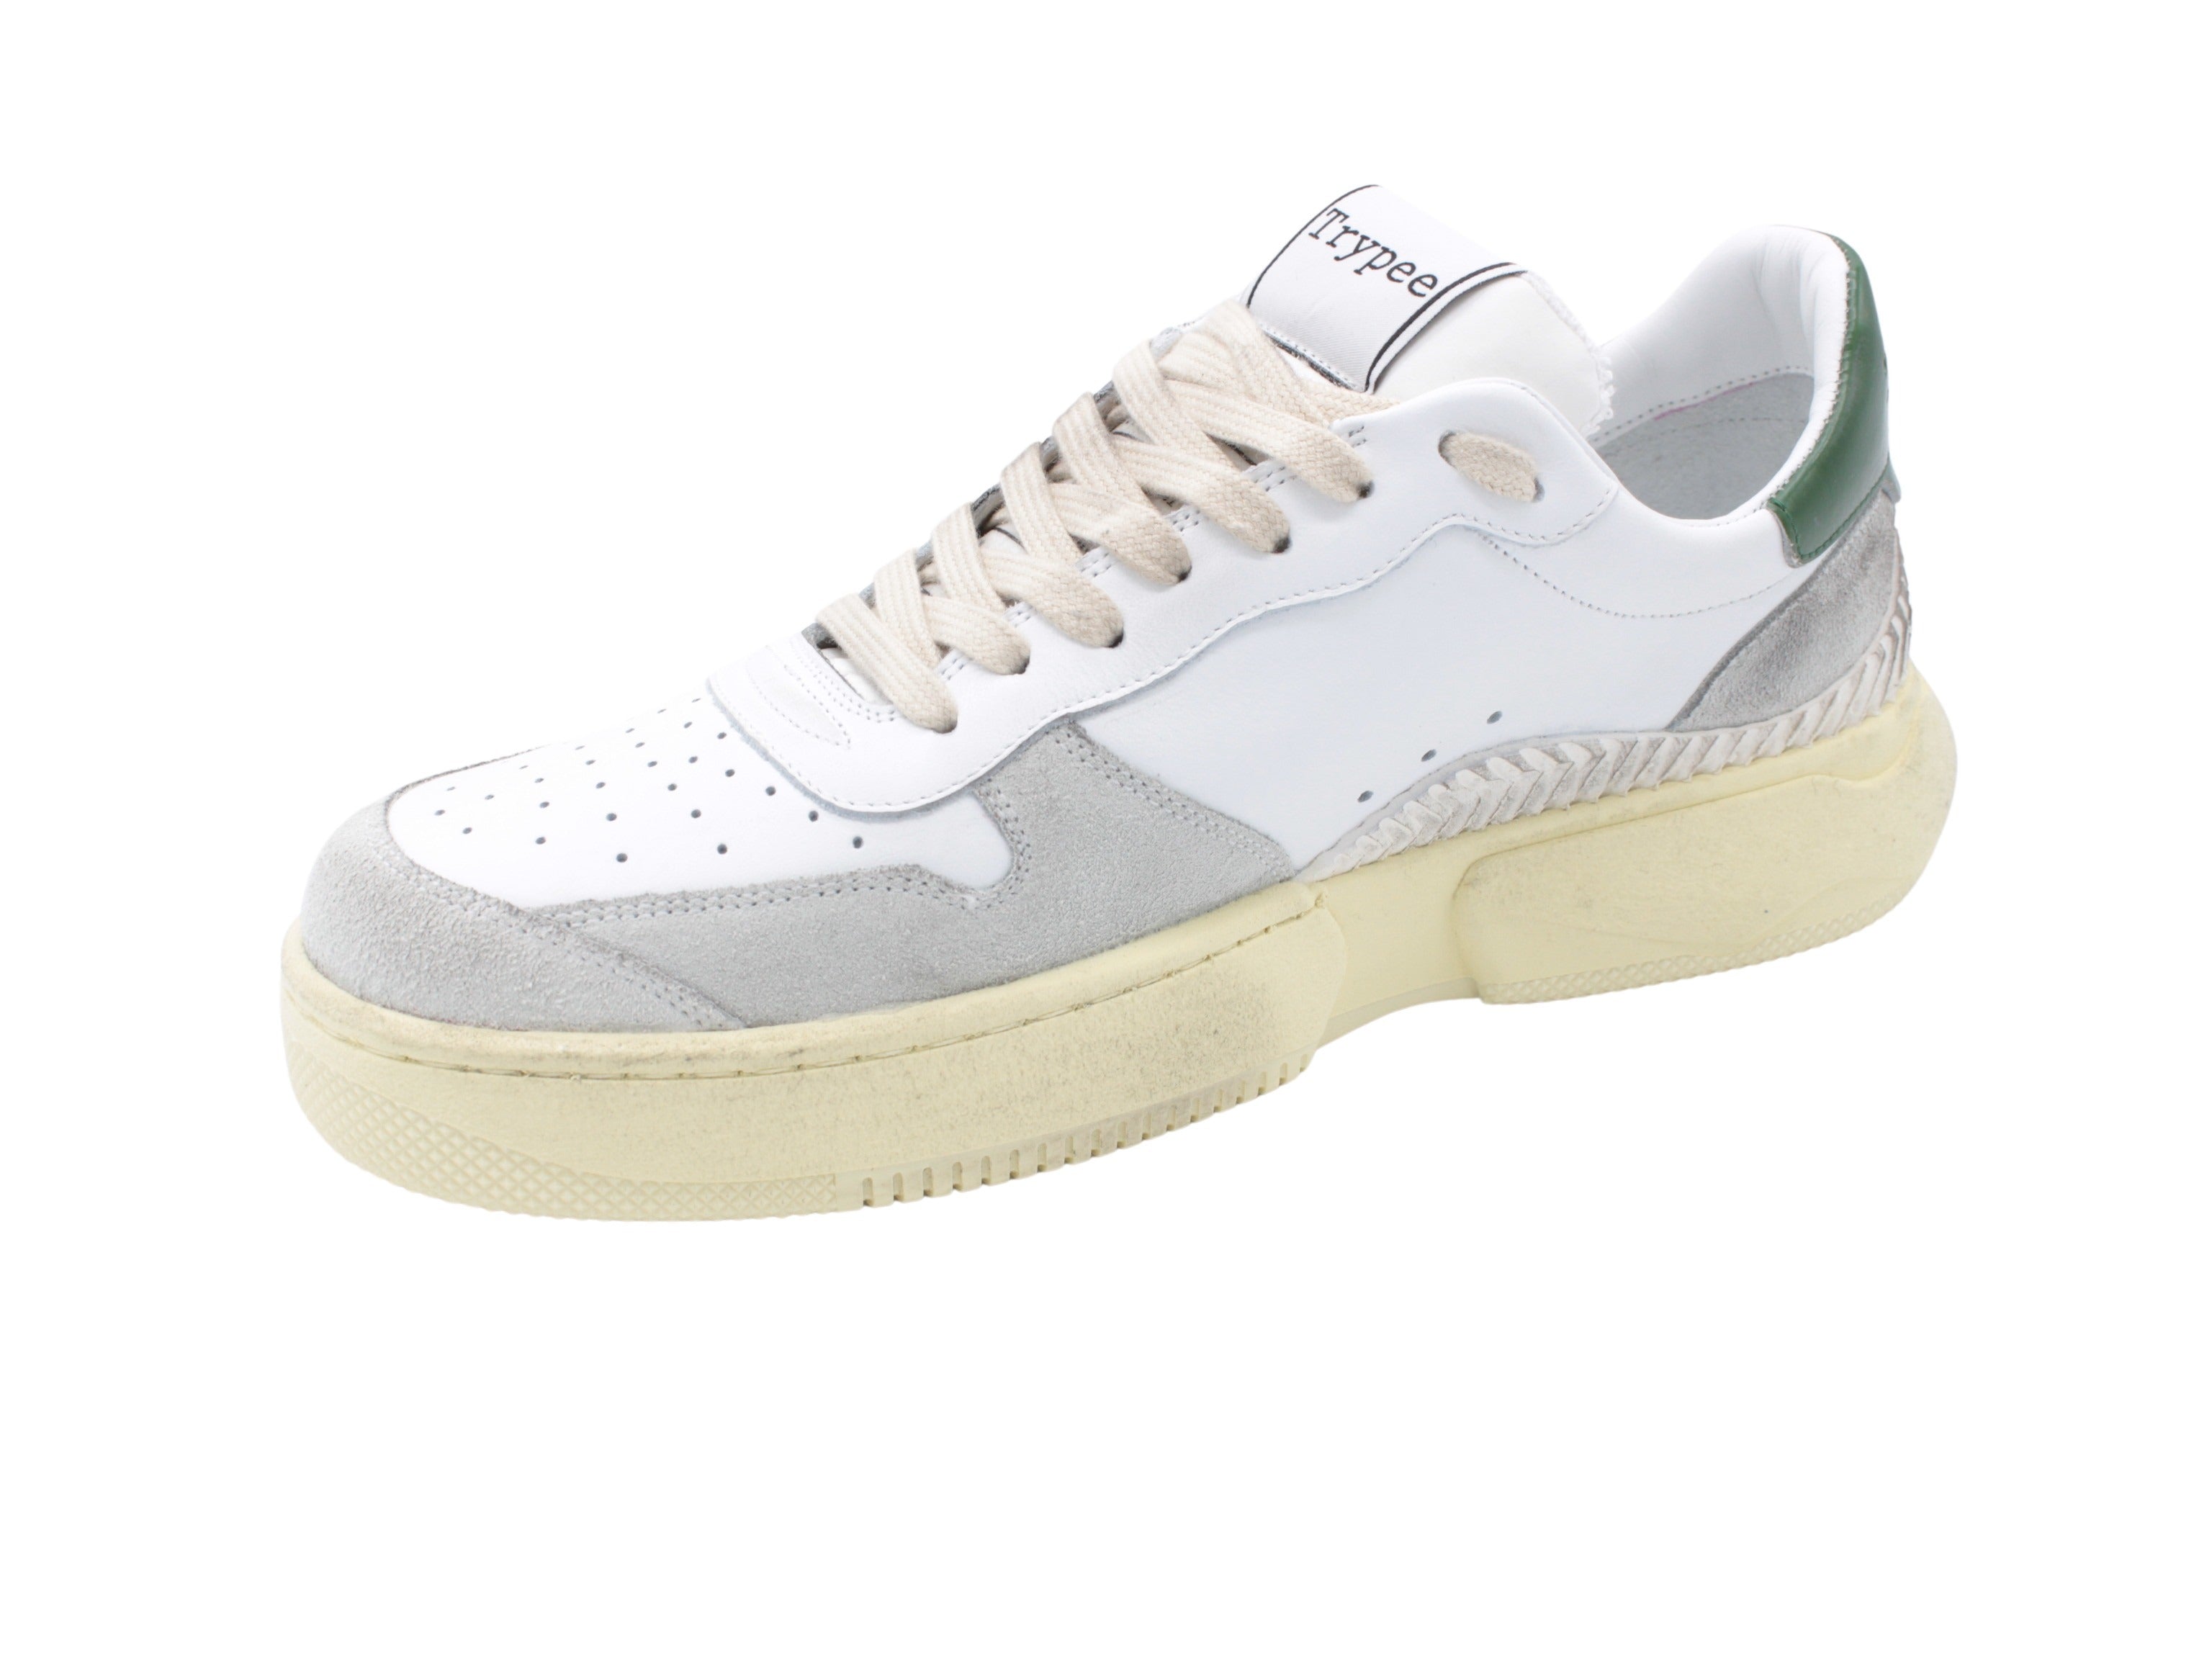 S128 white-green sneaker